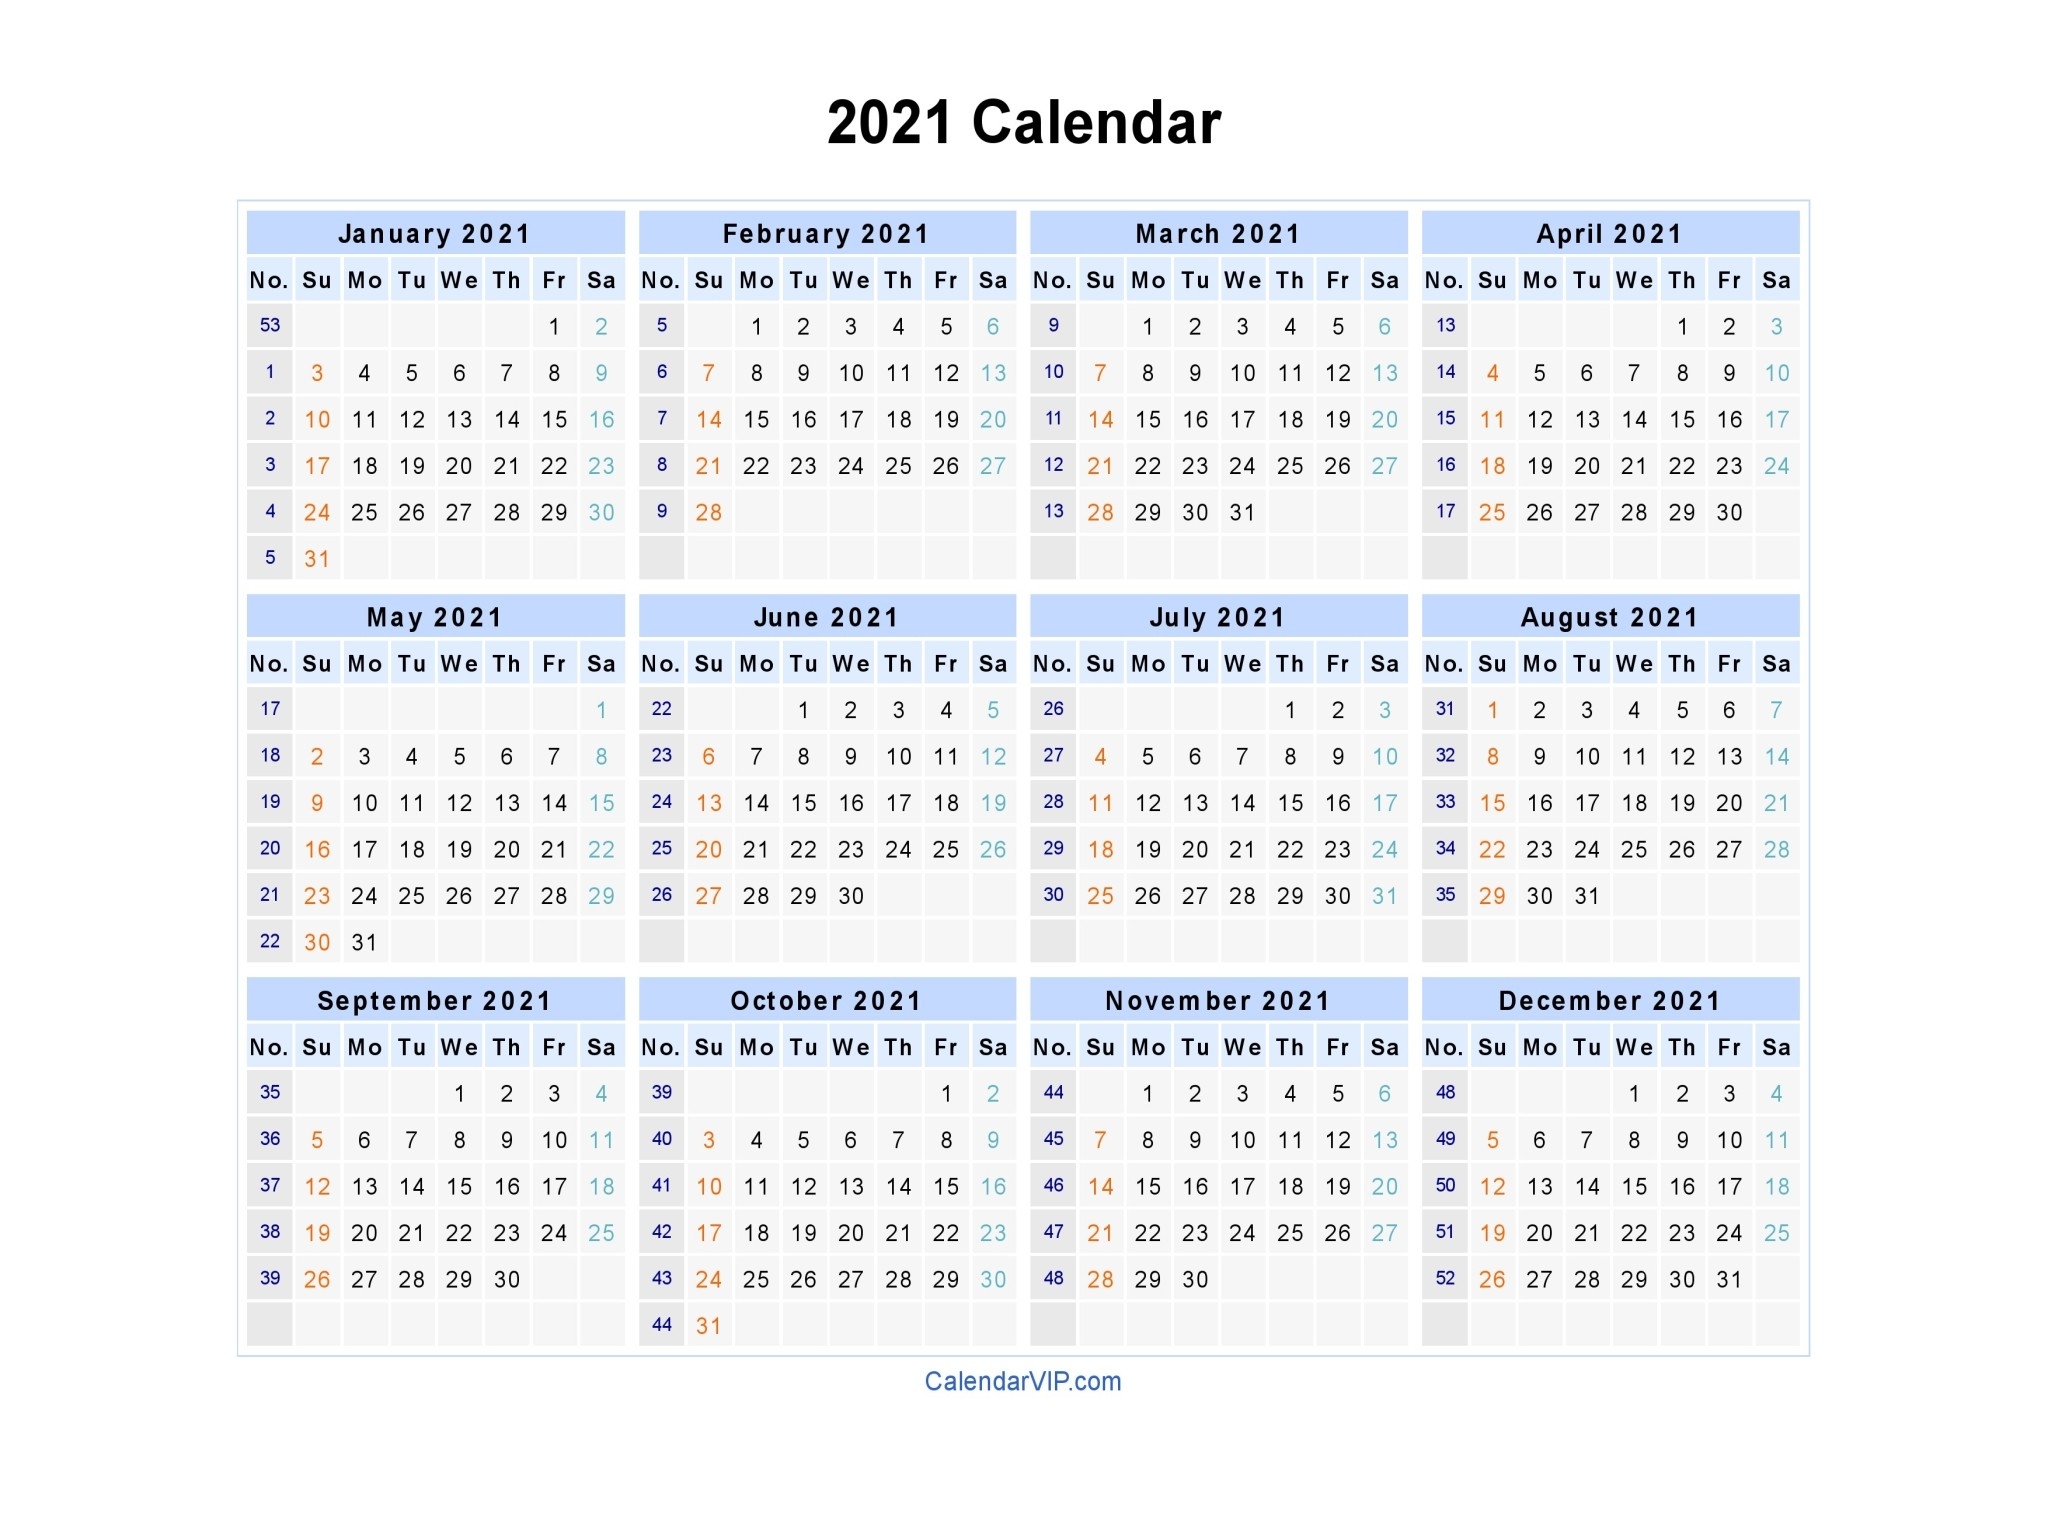 2021 Calendar - Blank Printable Calendar Template In Pdf-2021 Calendar In Excel By Week